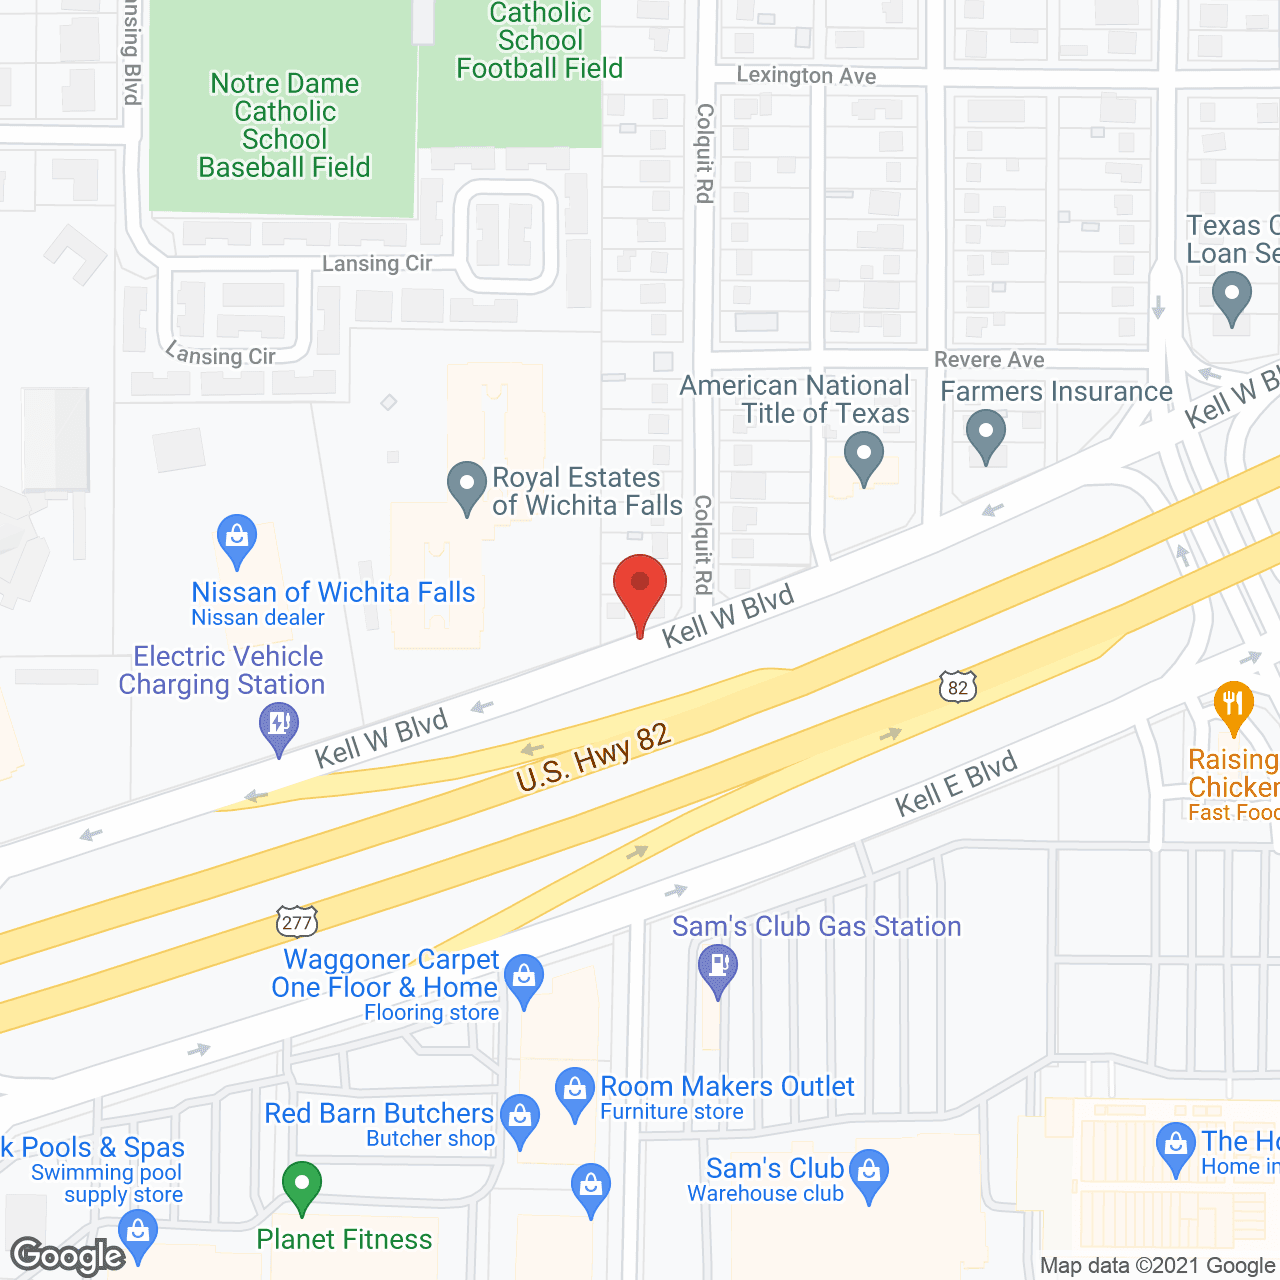 Royal Estates of Wichita Falls in google map